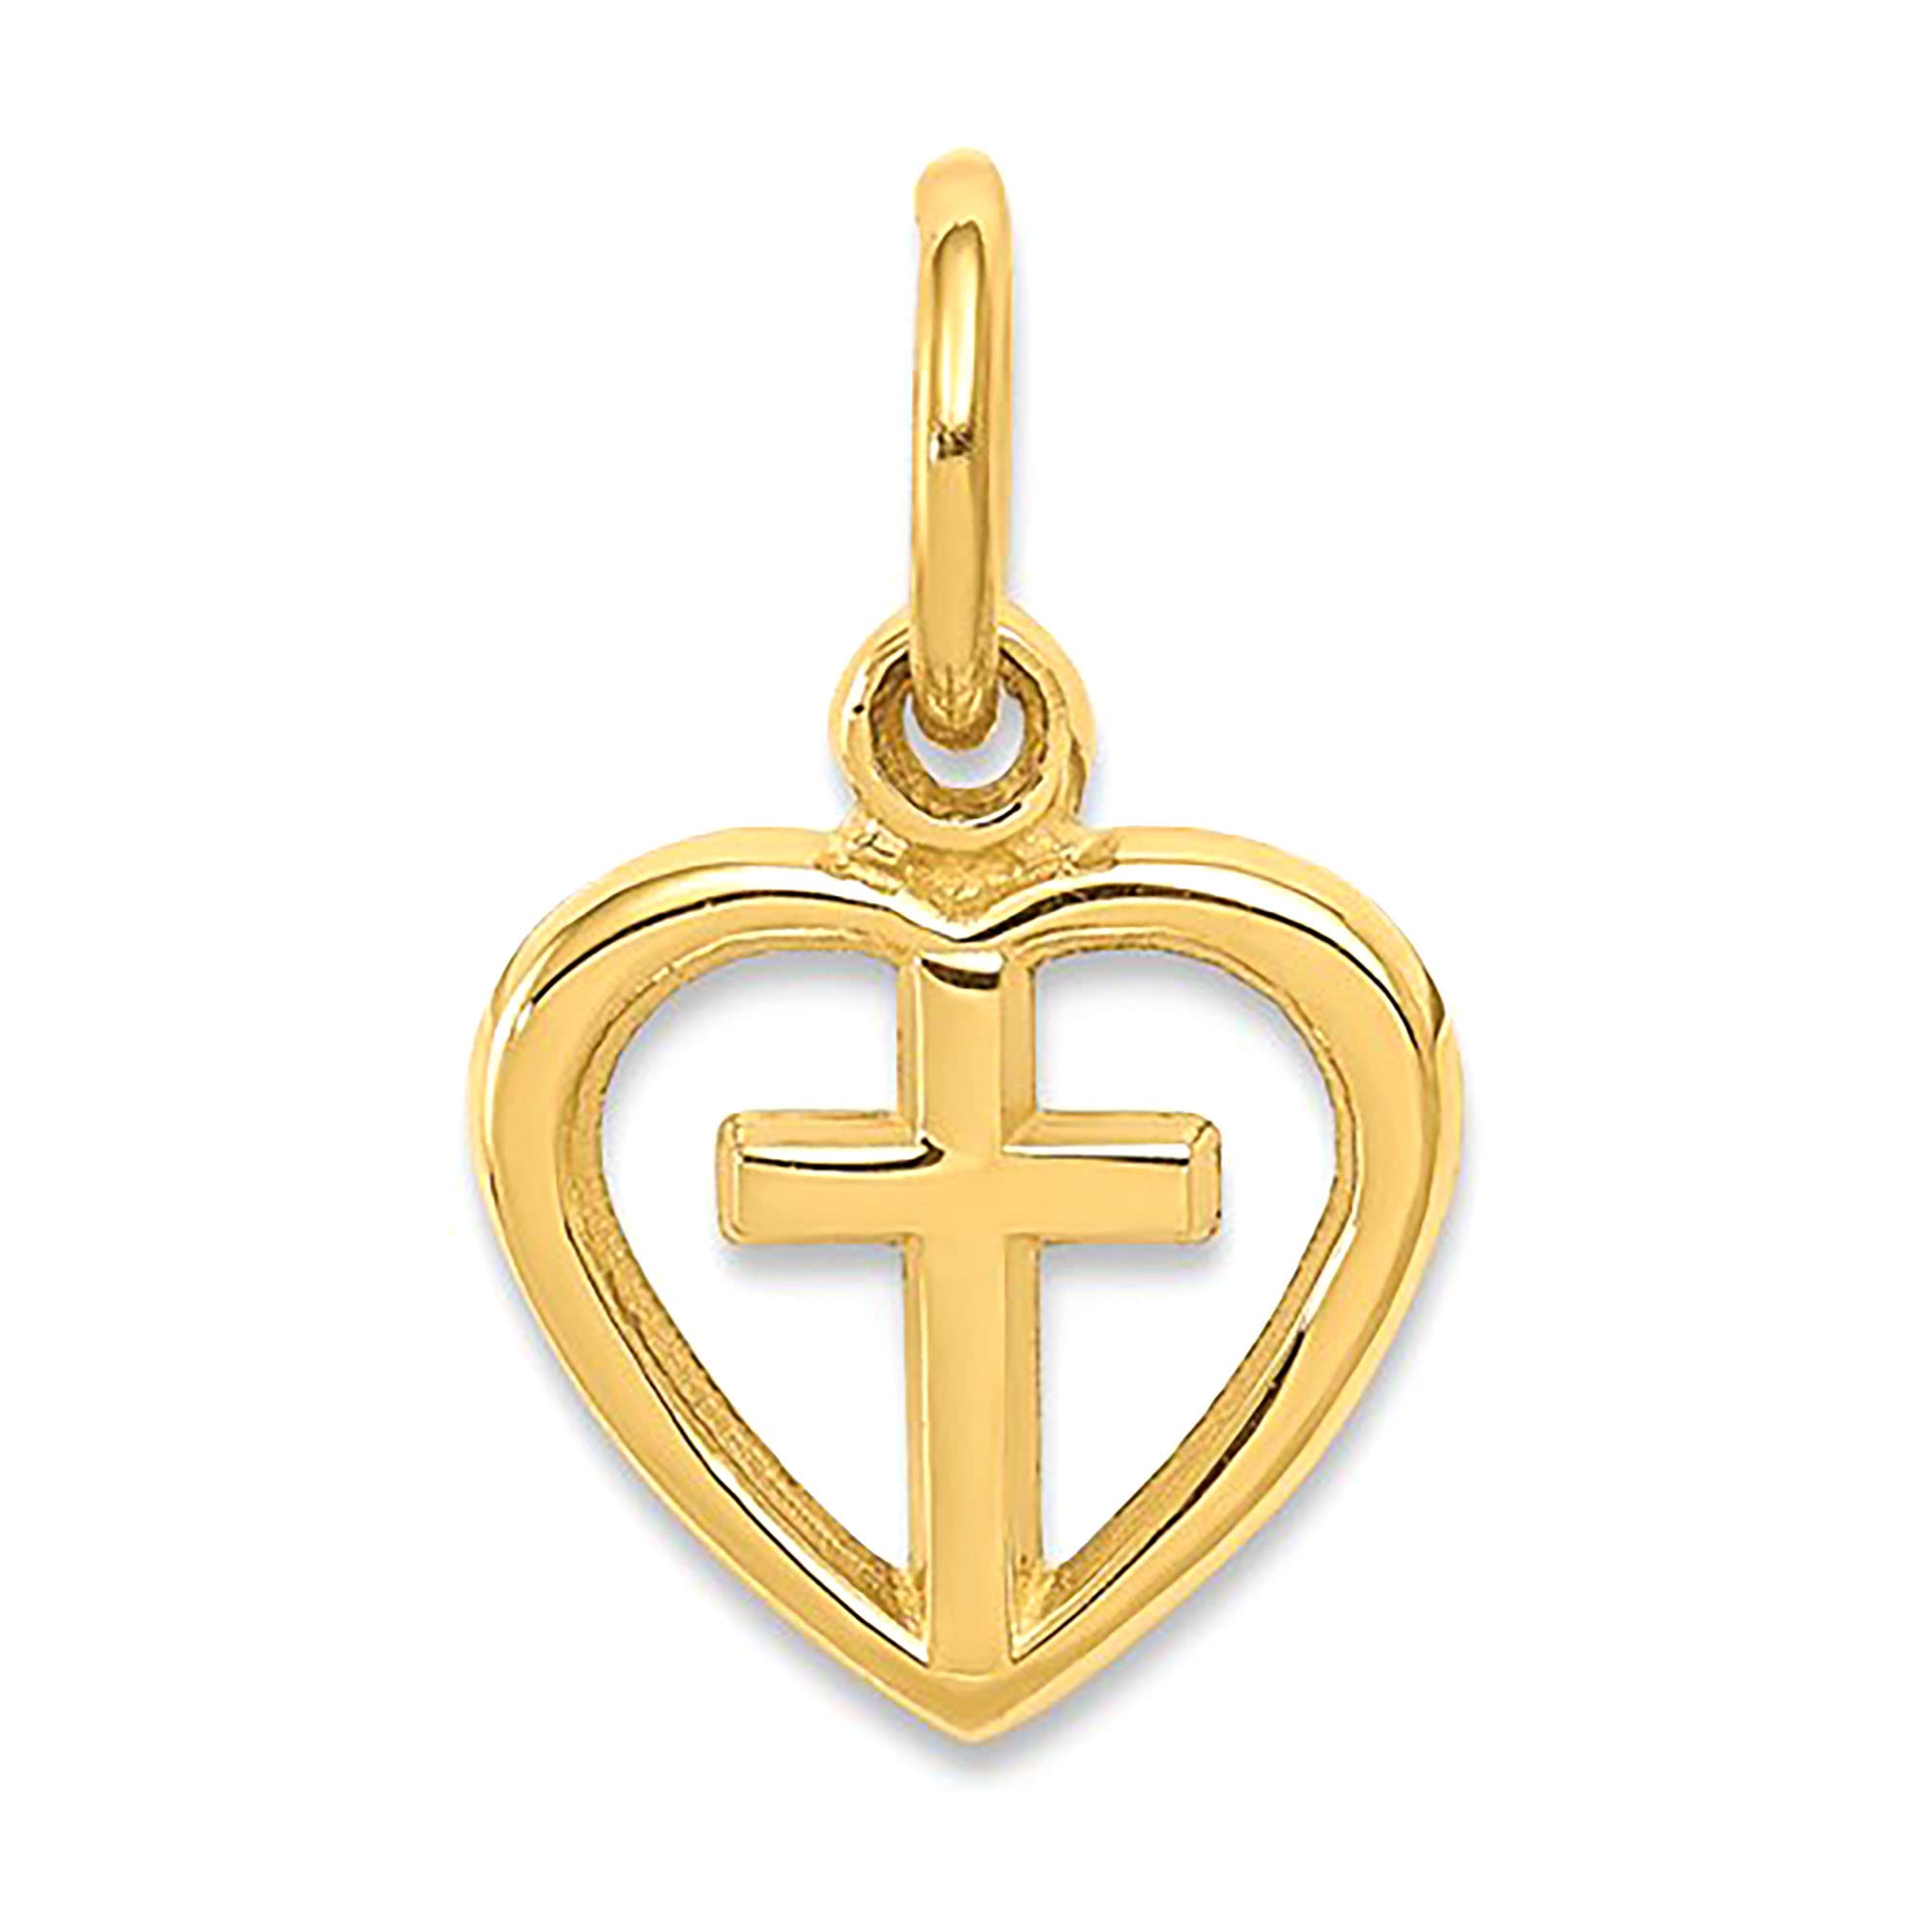 14K gult guld hjärta och kors charmhängande fina designersmycken för män och kvinnor